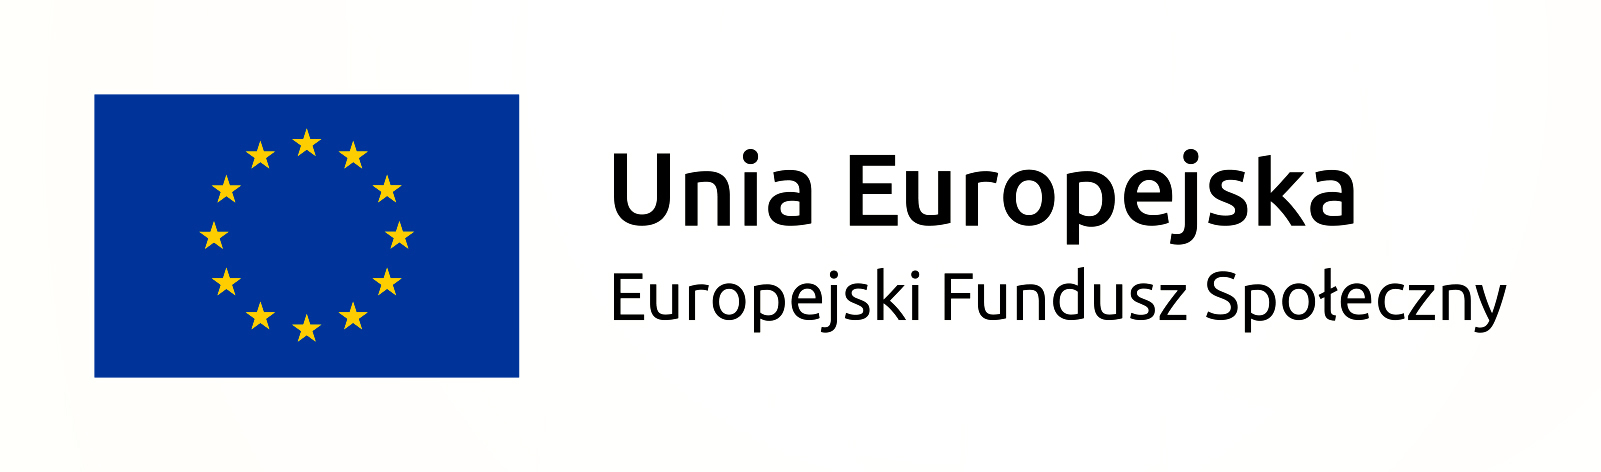 Logo UE Fundusz Społeczny